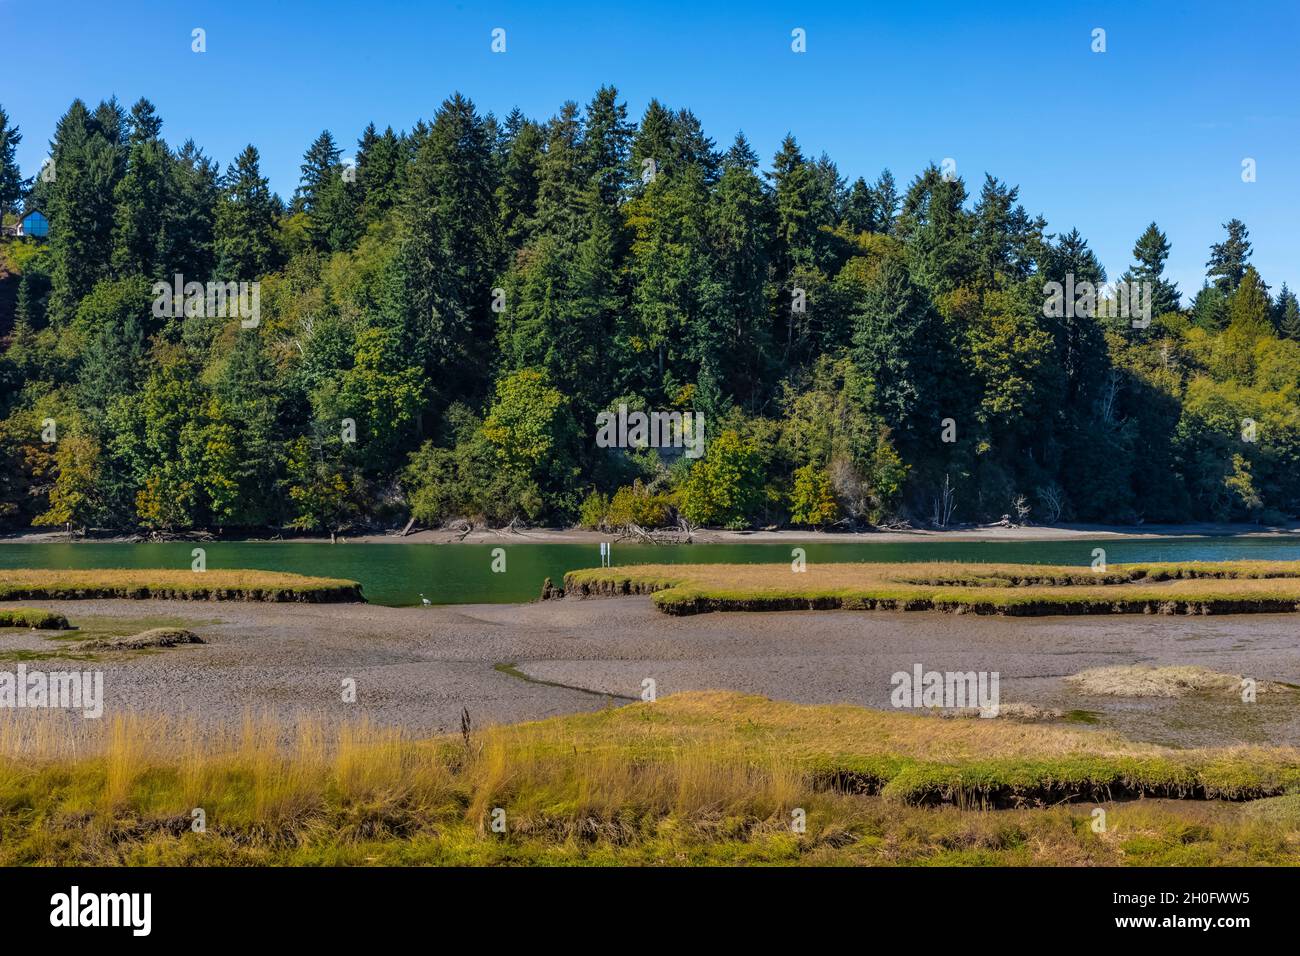 La bassa marea espone piante e mudflats e canali di marea al Billy Frank Jr. Nisqually National Wildlife Refuge, Washington state, USA Foto Stock